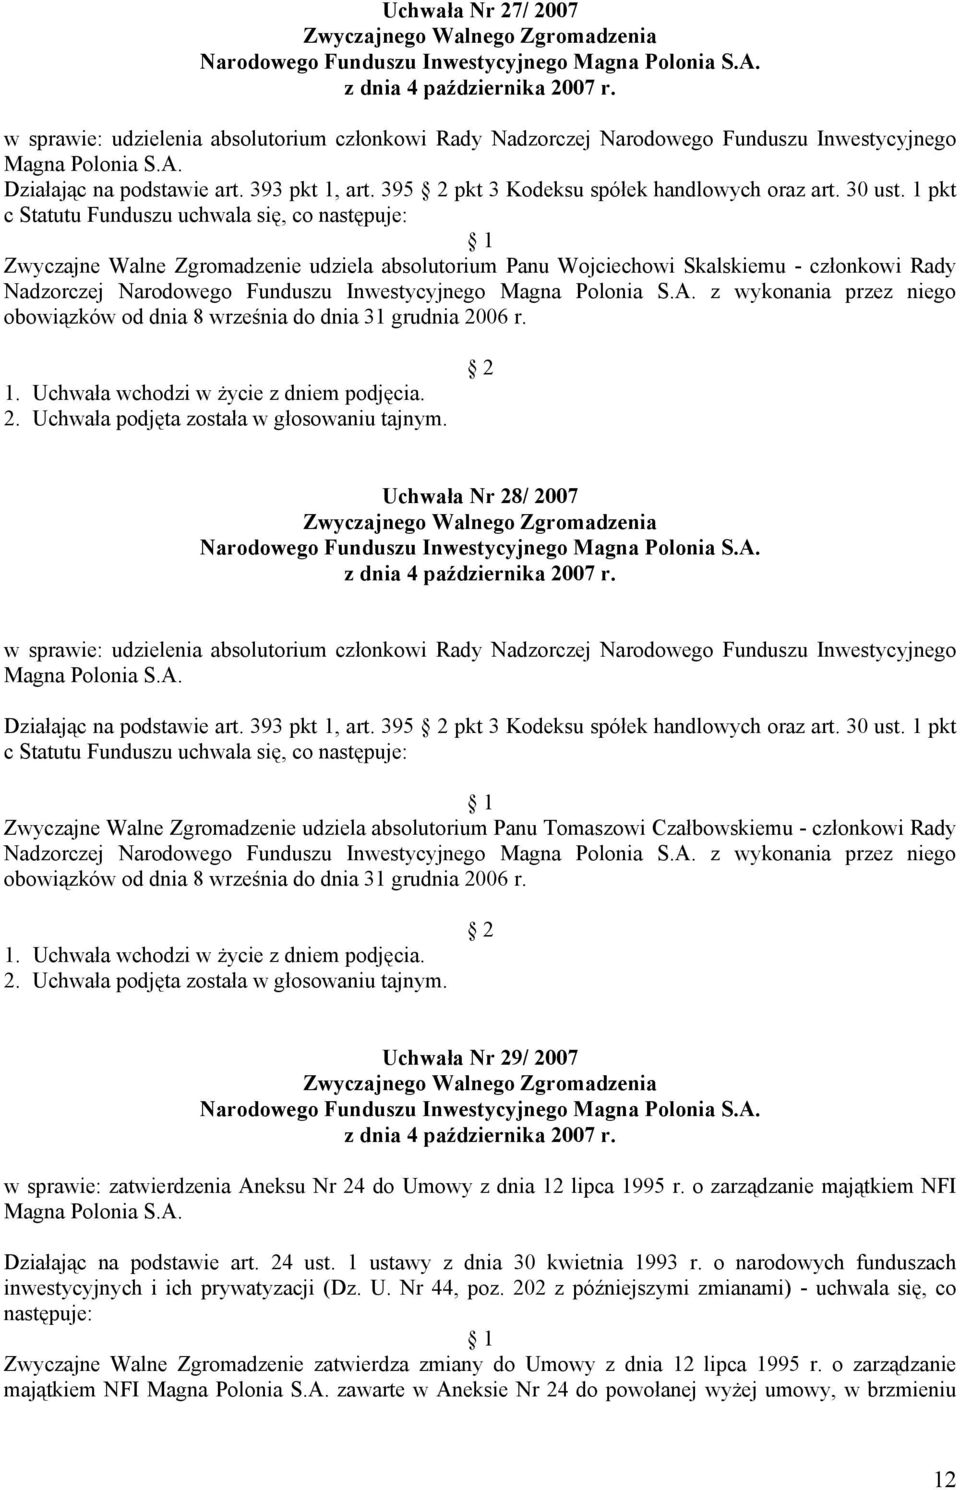 1 pkt Zwyczajne Walne Zgromadzenie udziela absolutorium Panu Wojciechowi Skalskiemu - członkowi Rady Nadzorczej z wykonania przez niego obowiązków od dnia 8 września do dnia 31 grudnia 2006 r.